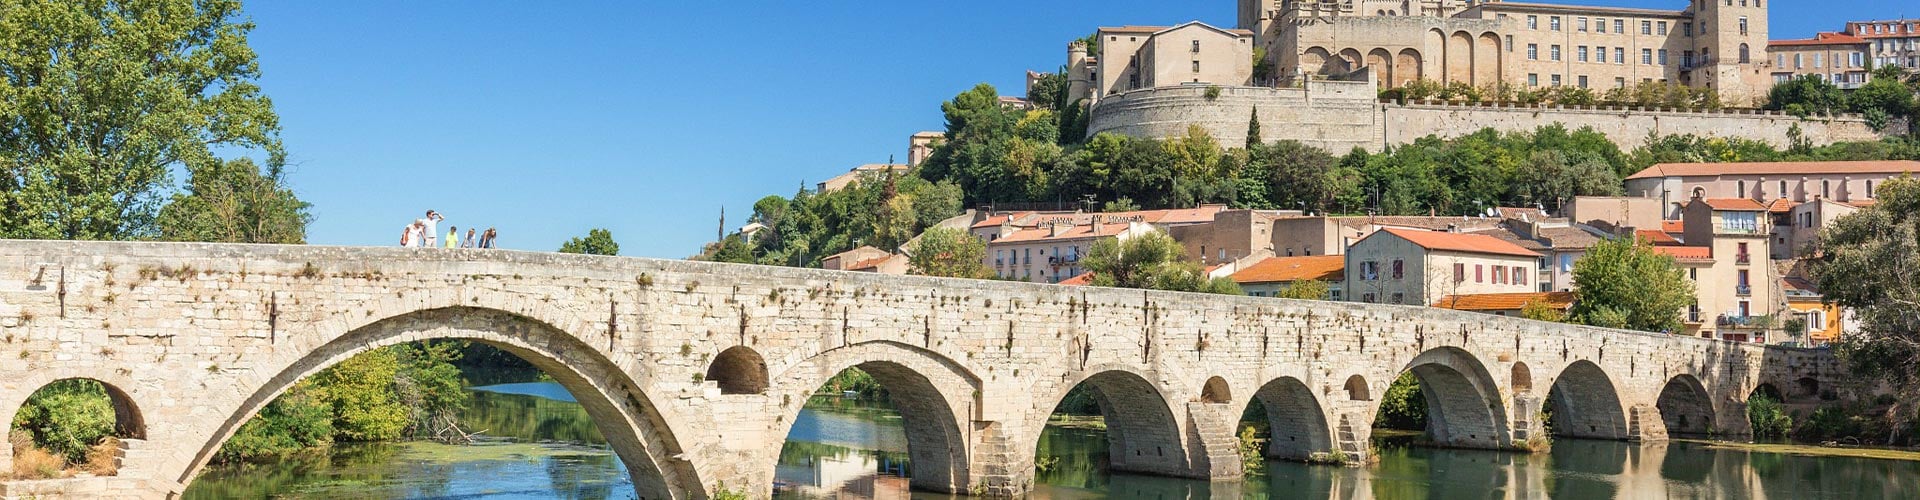 le pont de Béziers